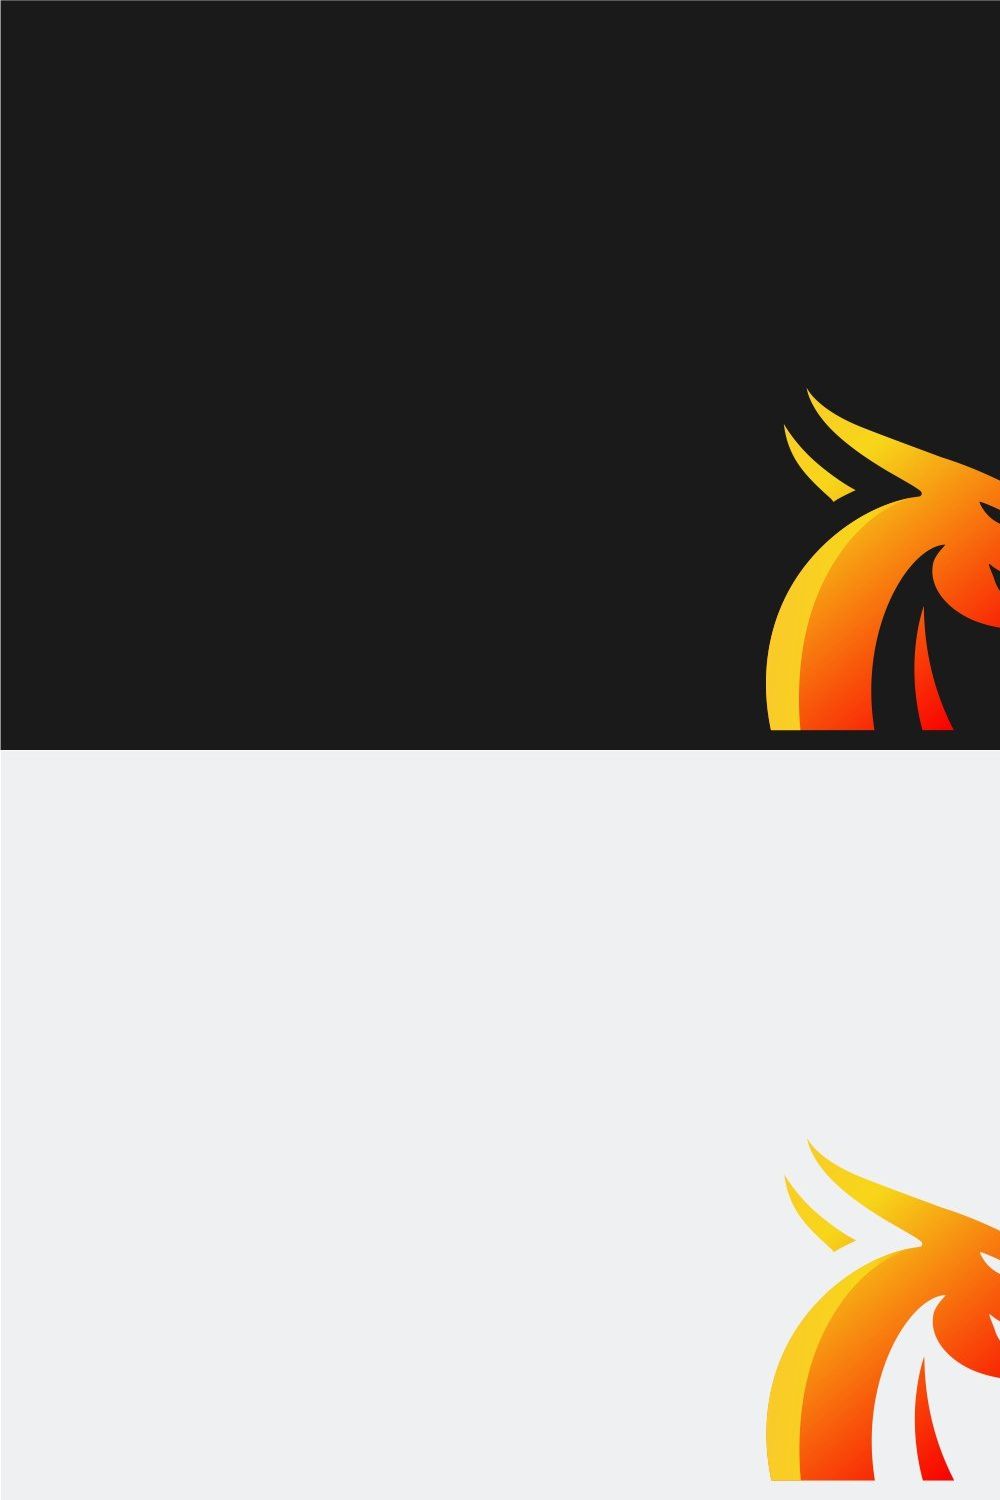 Dragon Logo pinterest preview image.